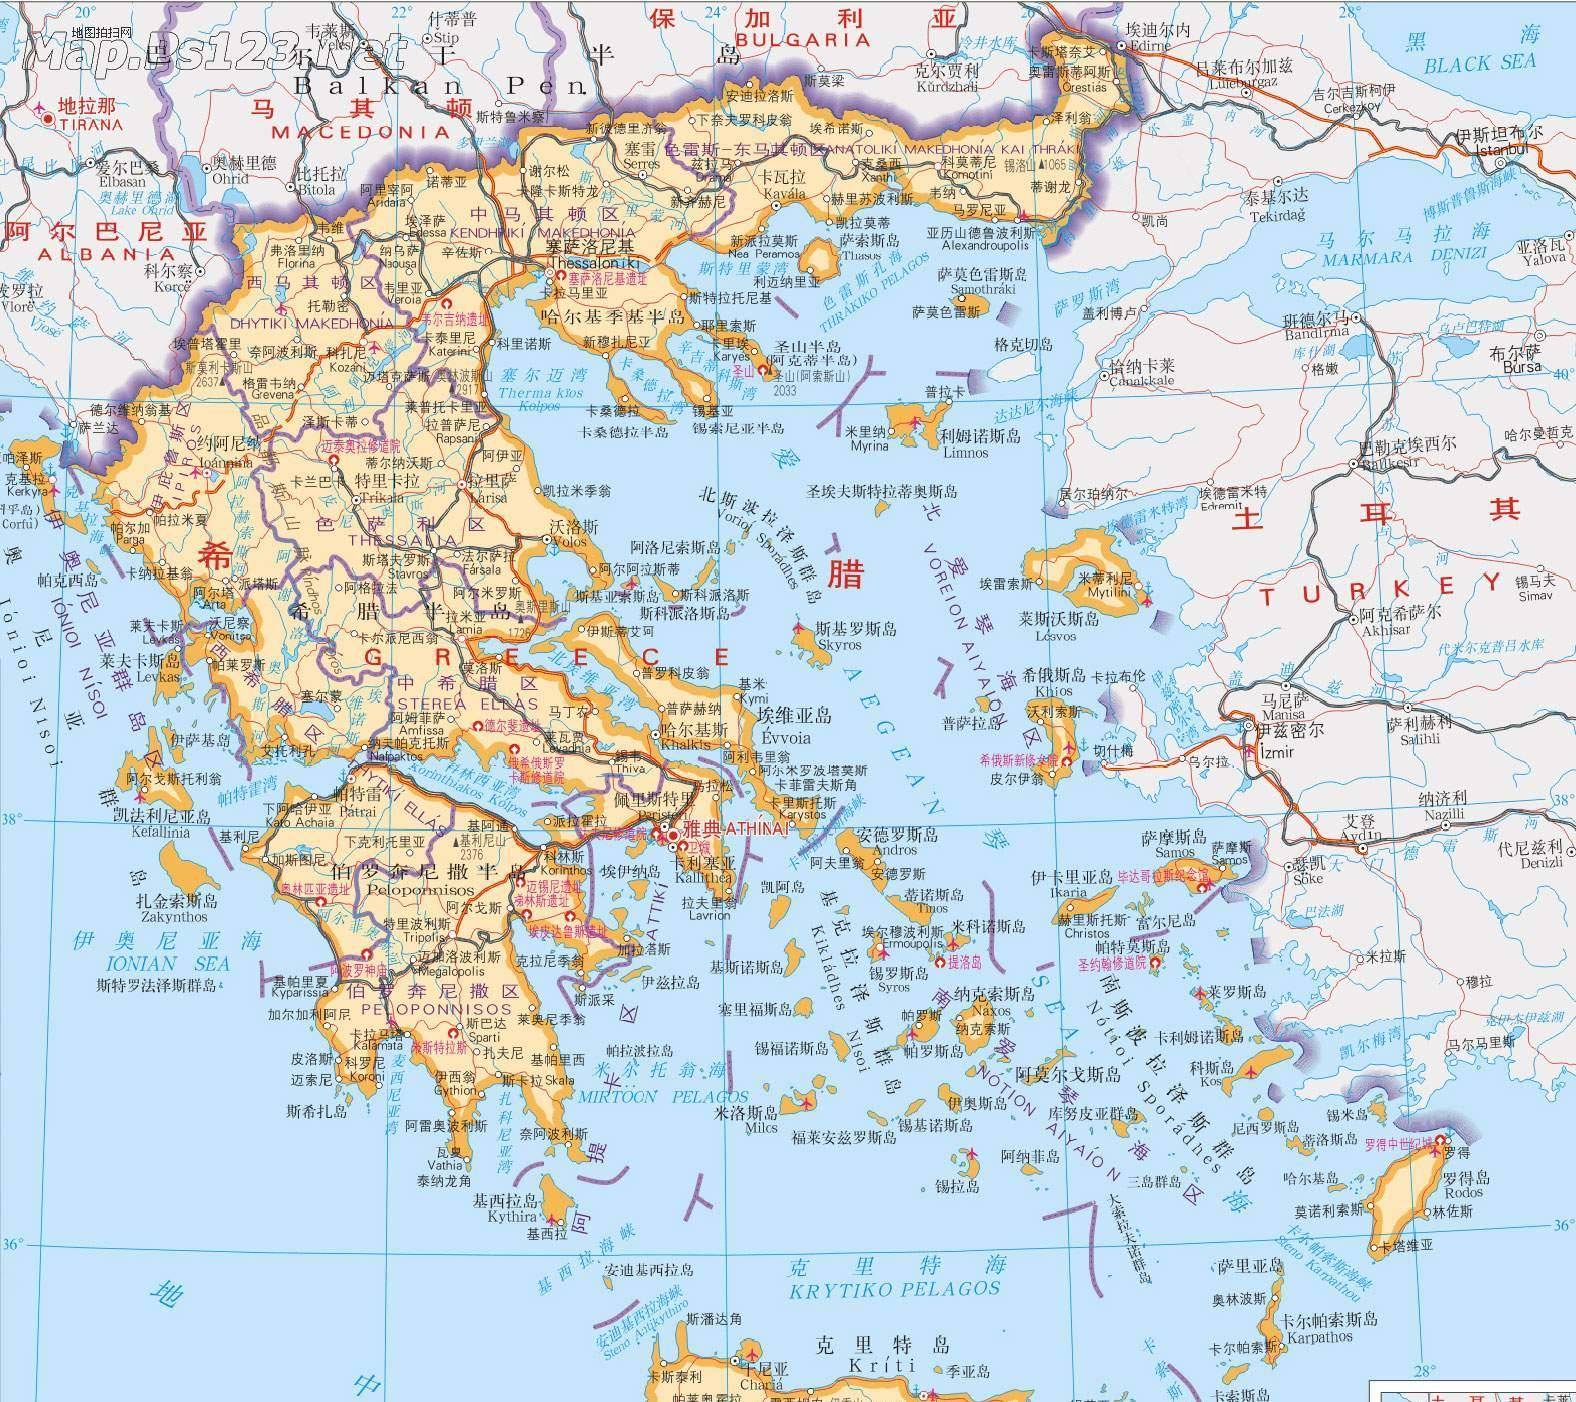 原创憋屈的土耳其被希腊贴着海岸线划界几乎独占爱琴海诸岛